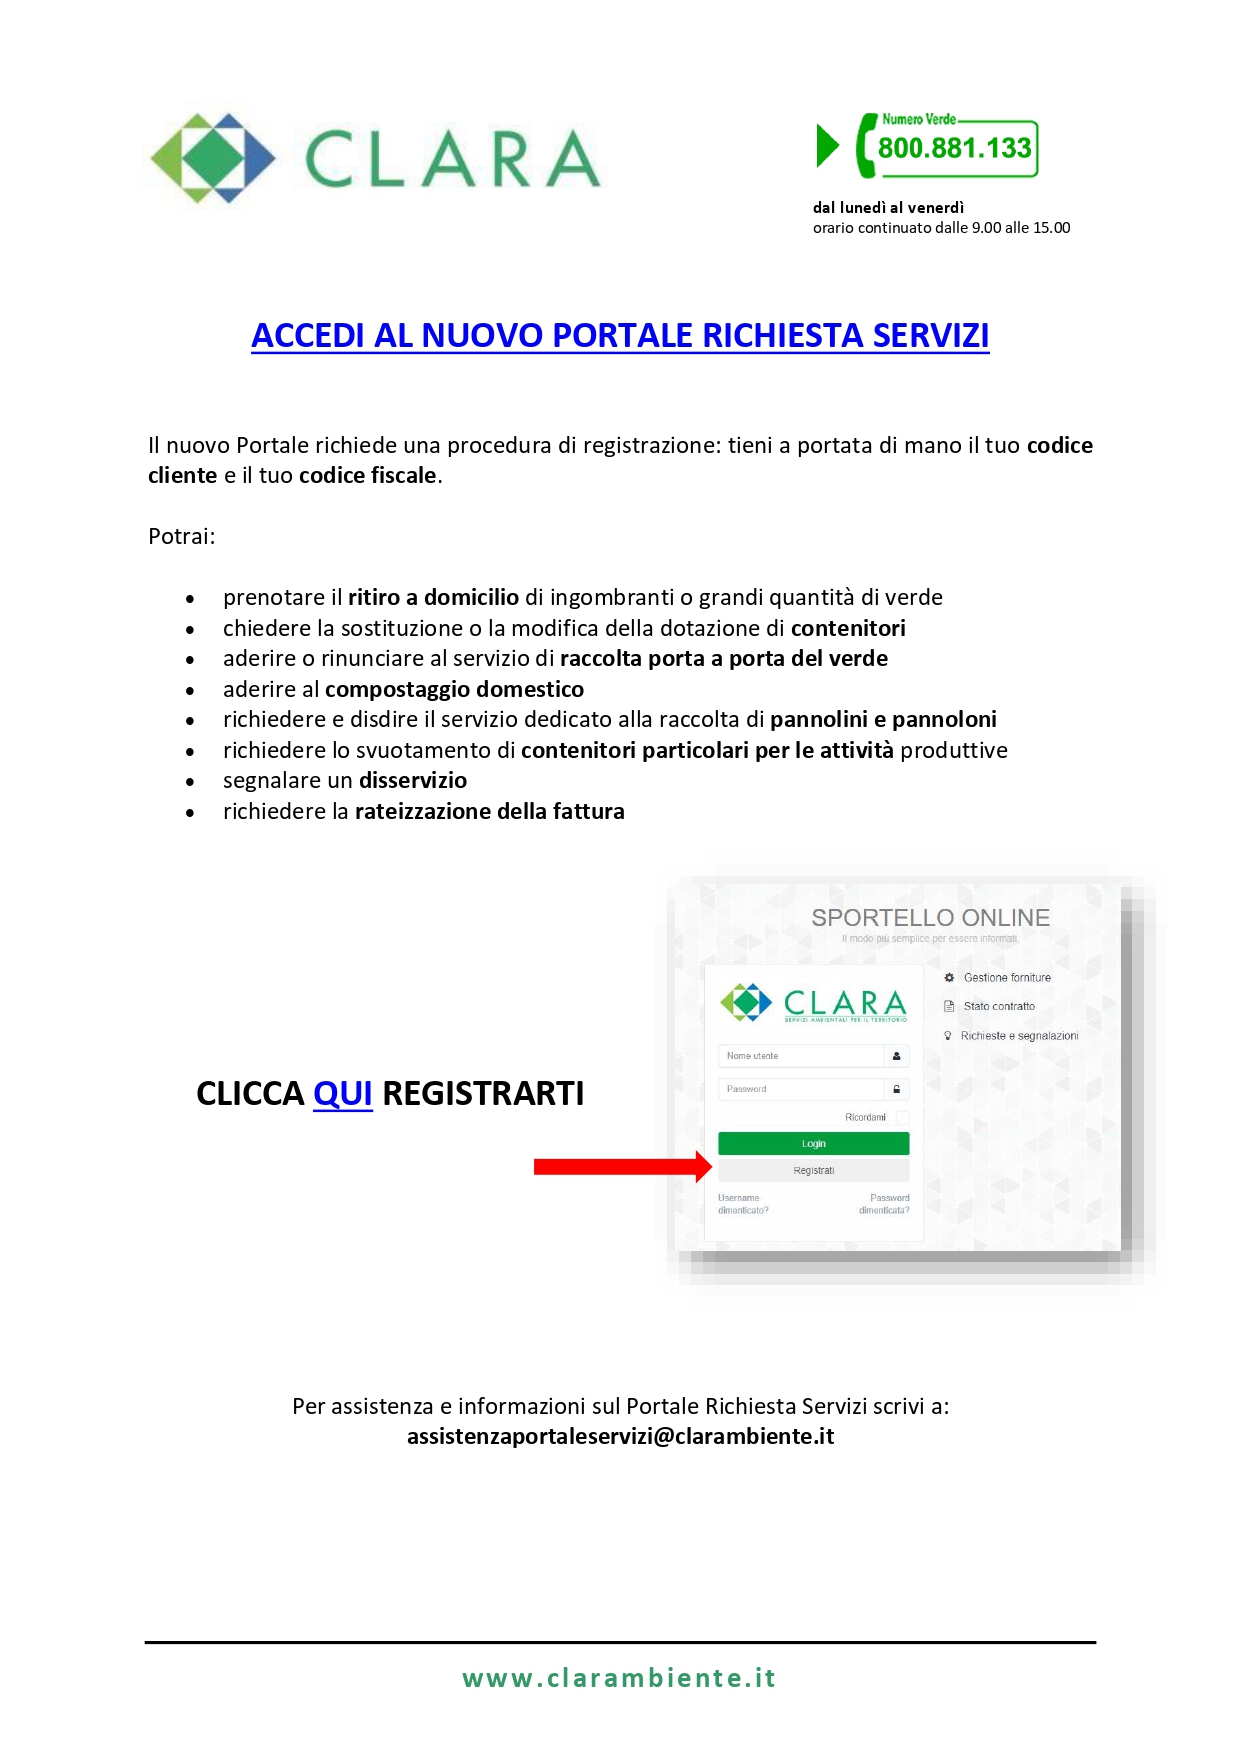 screenshot registrazione al portale di Clara servizi online